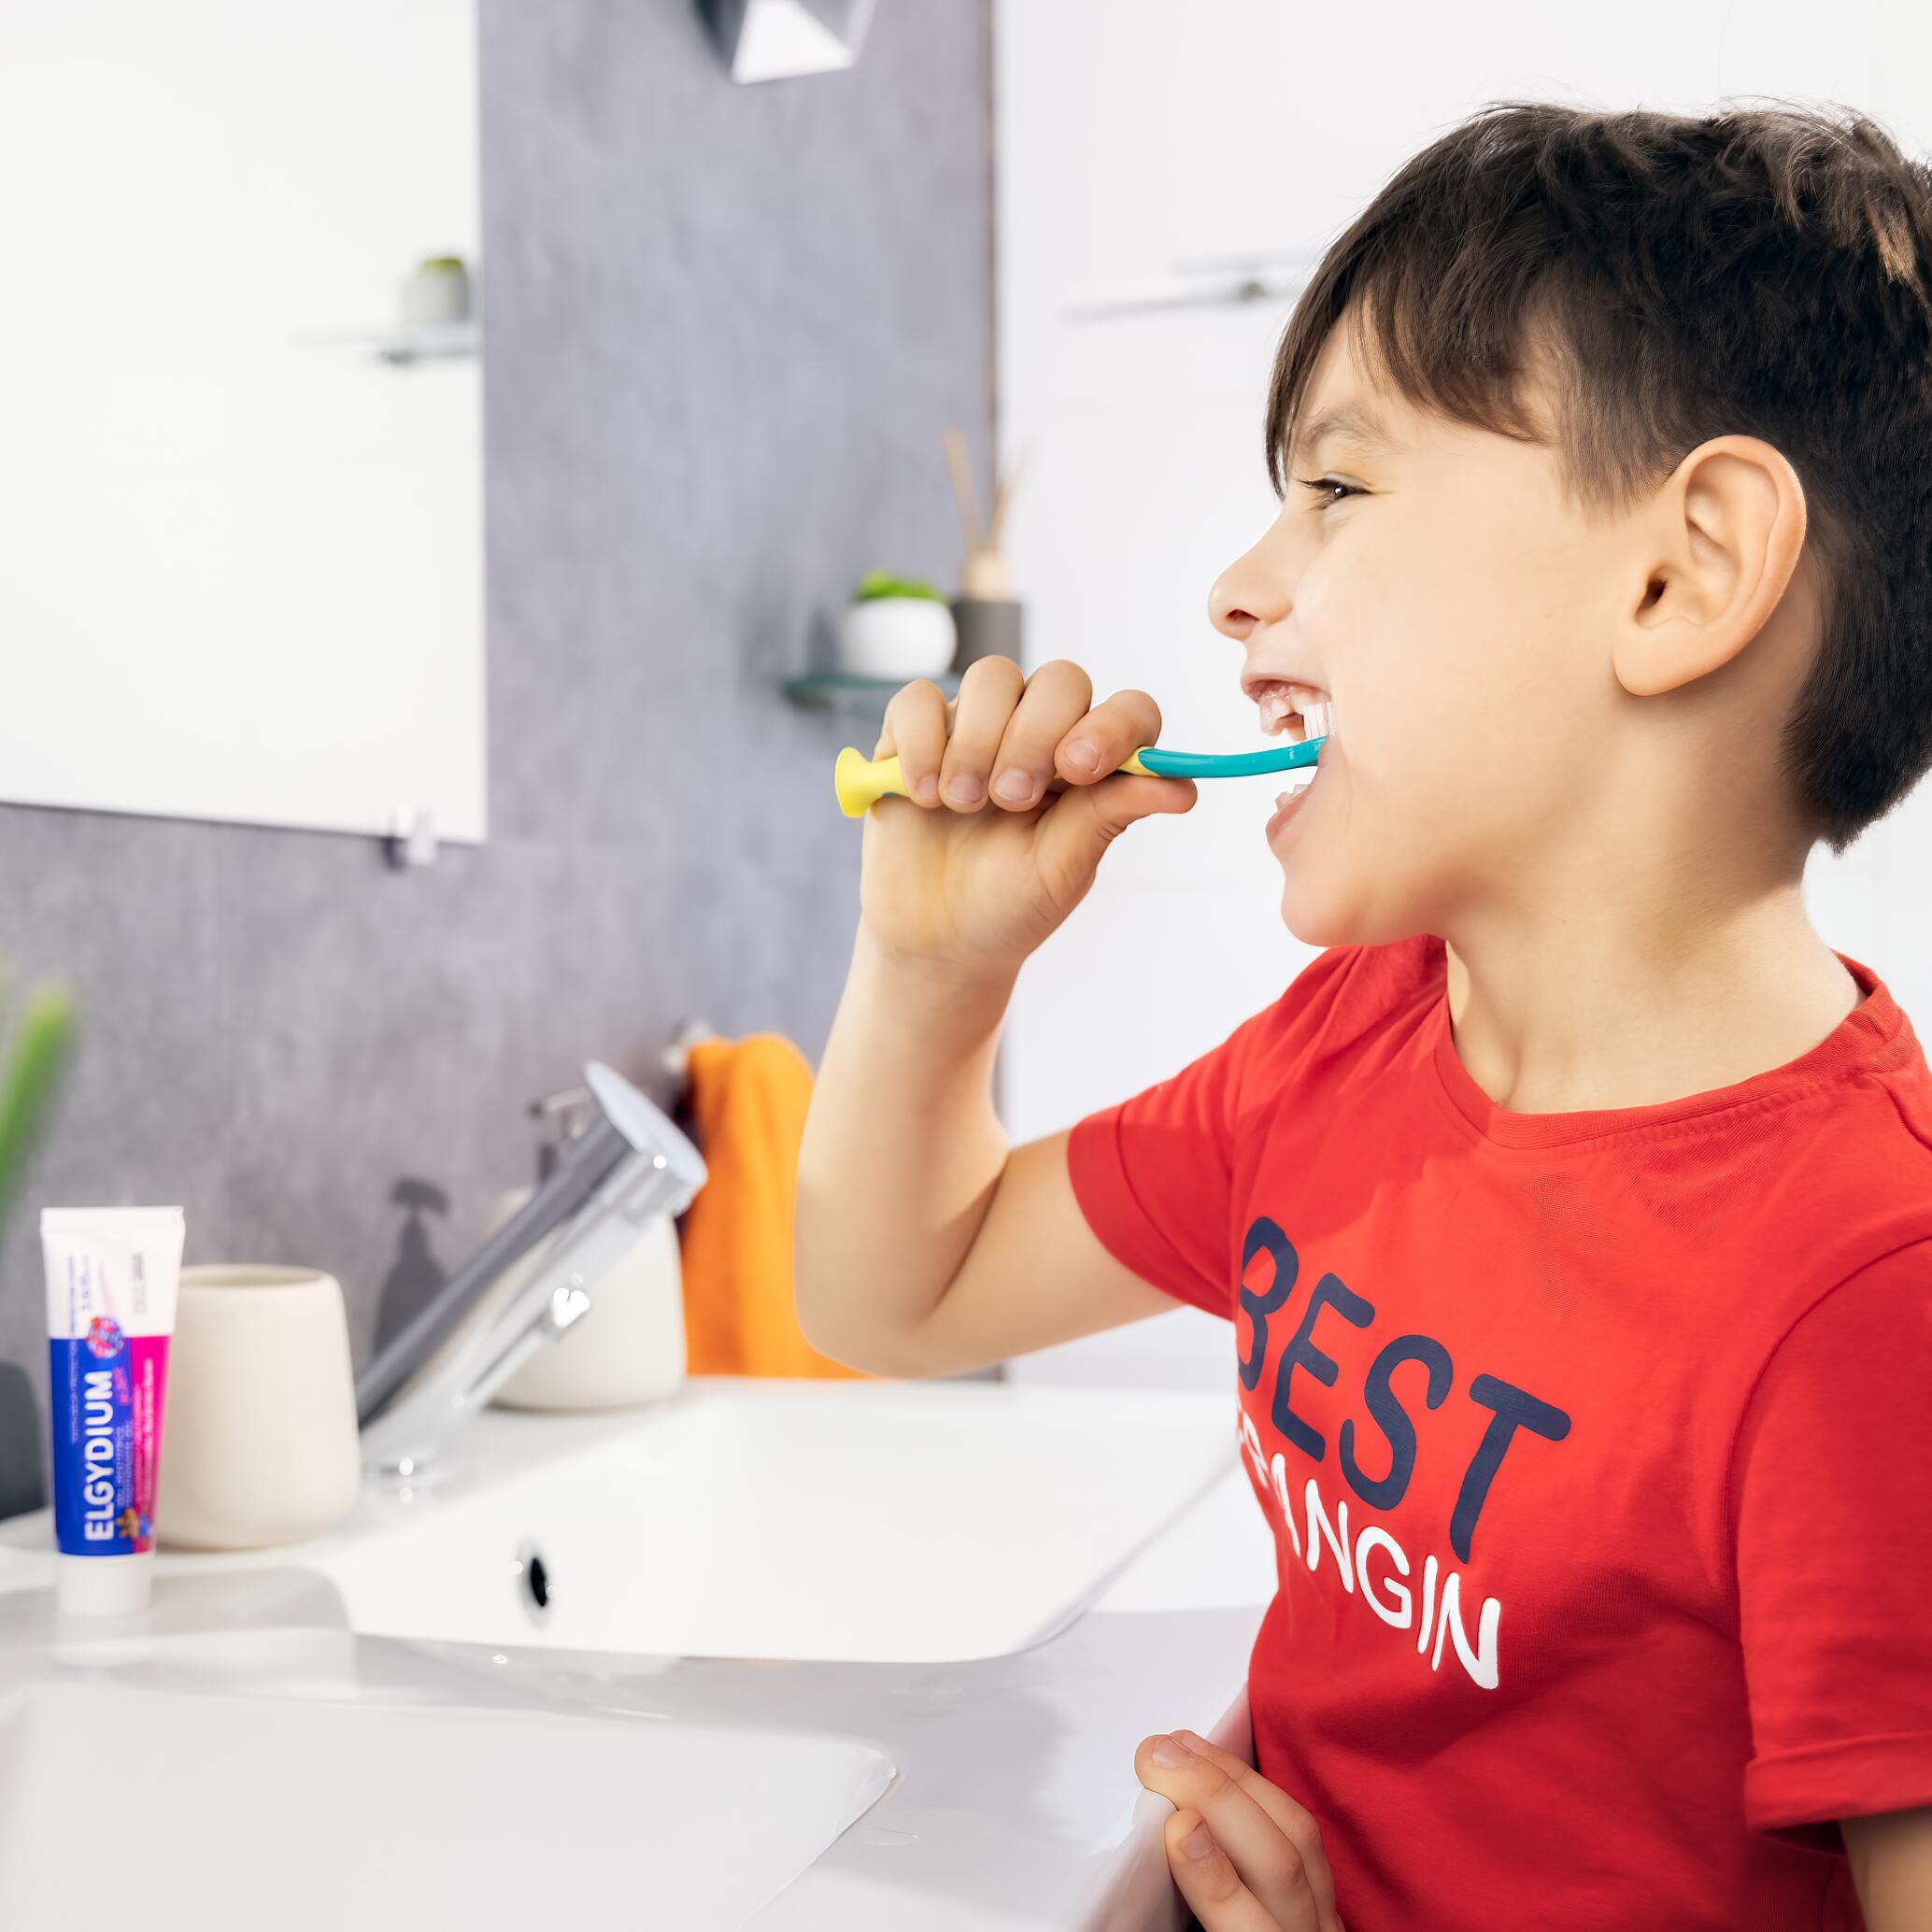 Brosse à dent, santé et hygiène enfants.